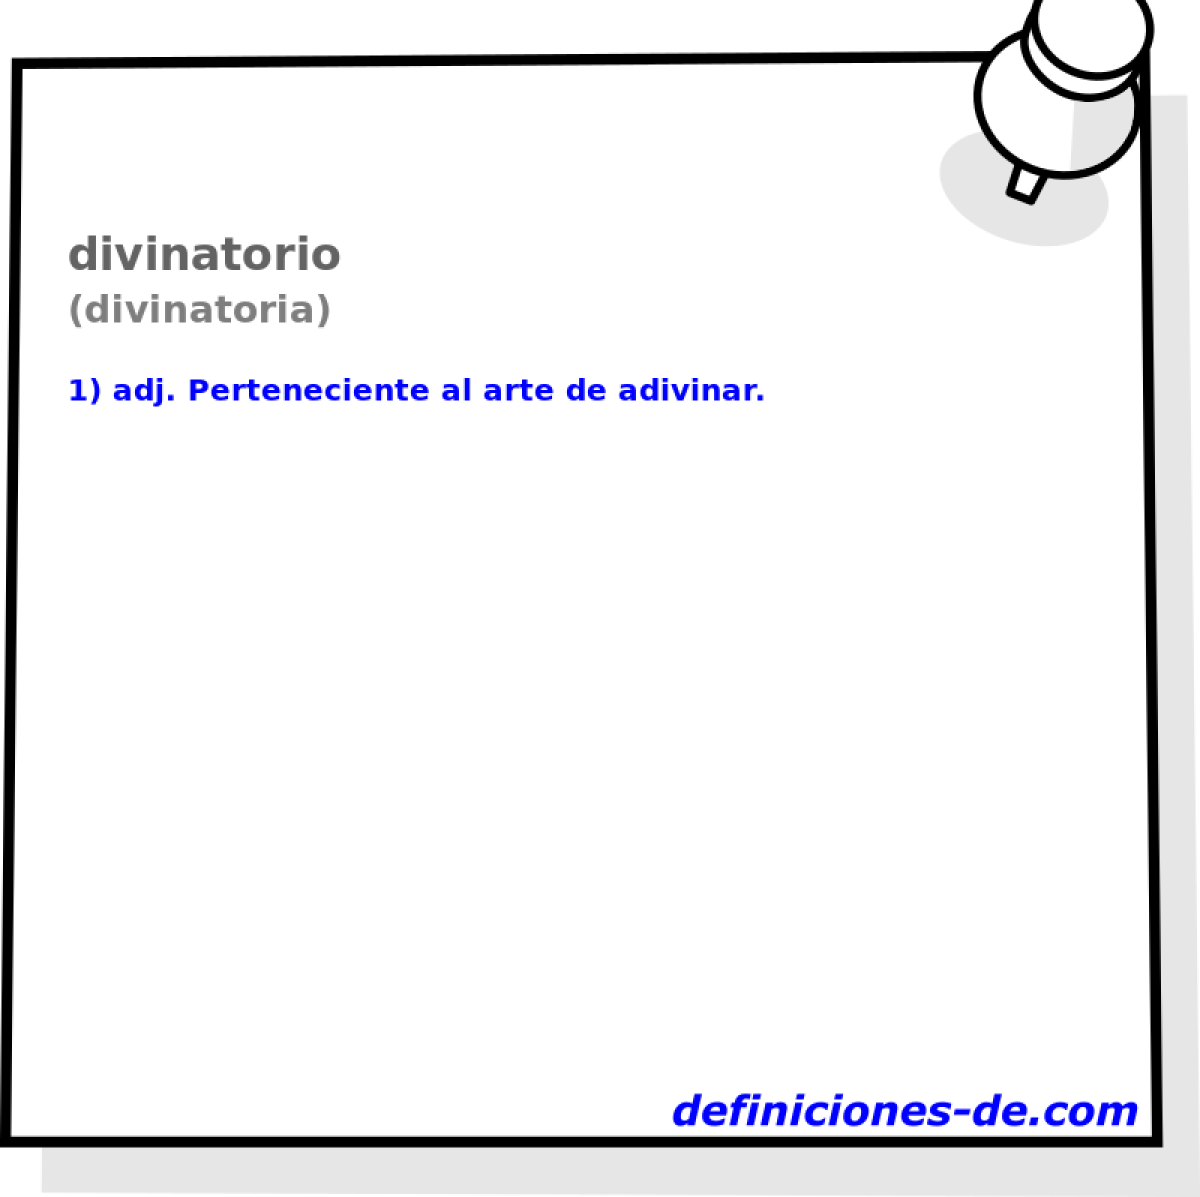 divinatorio (divinatoria)